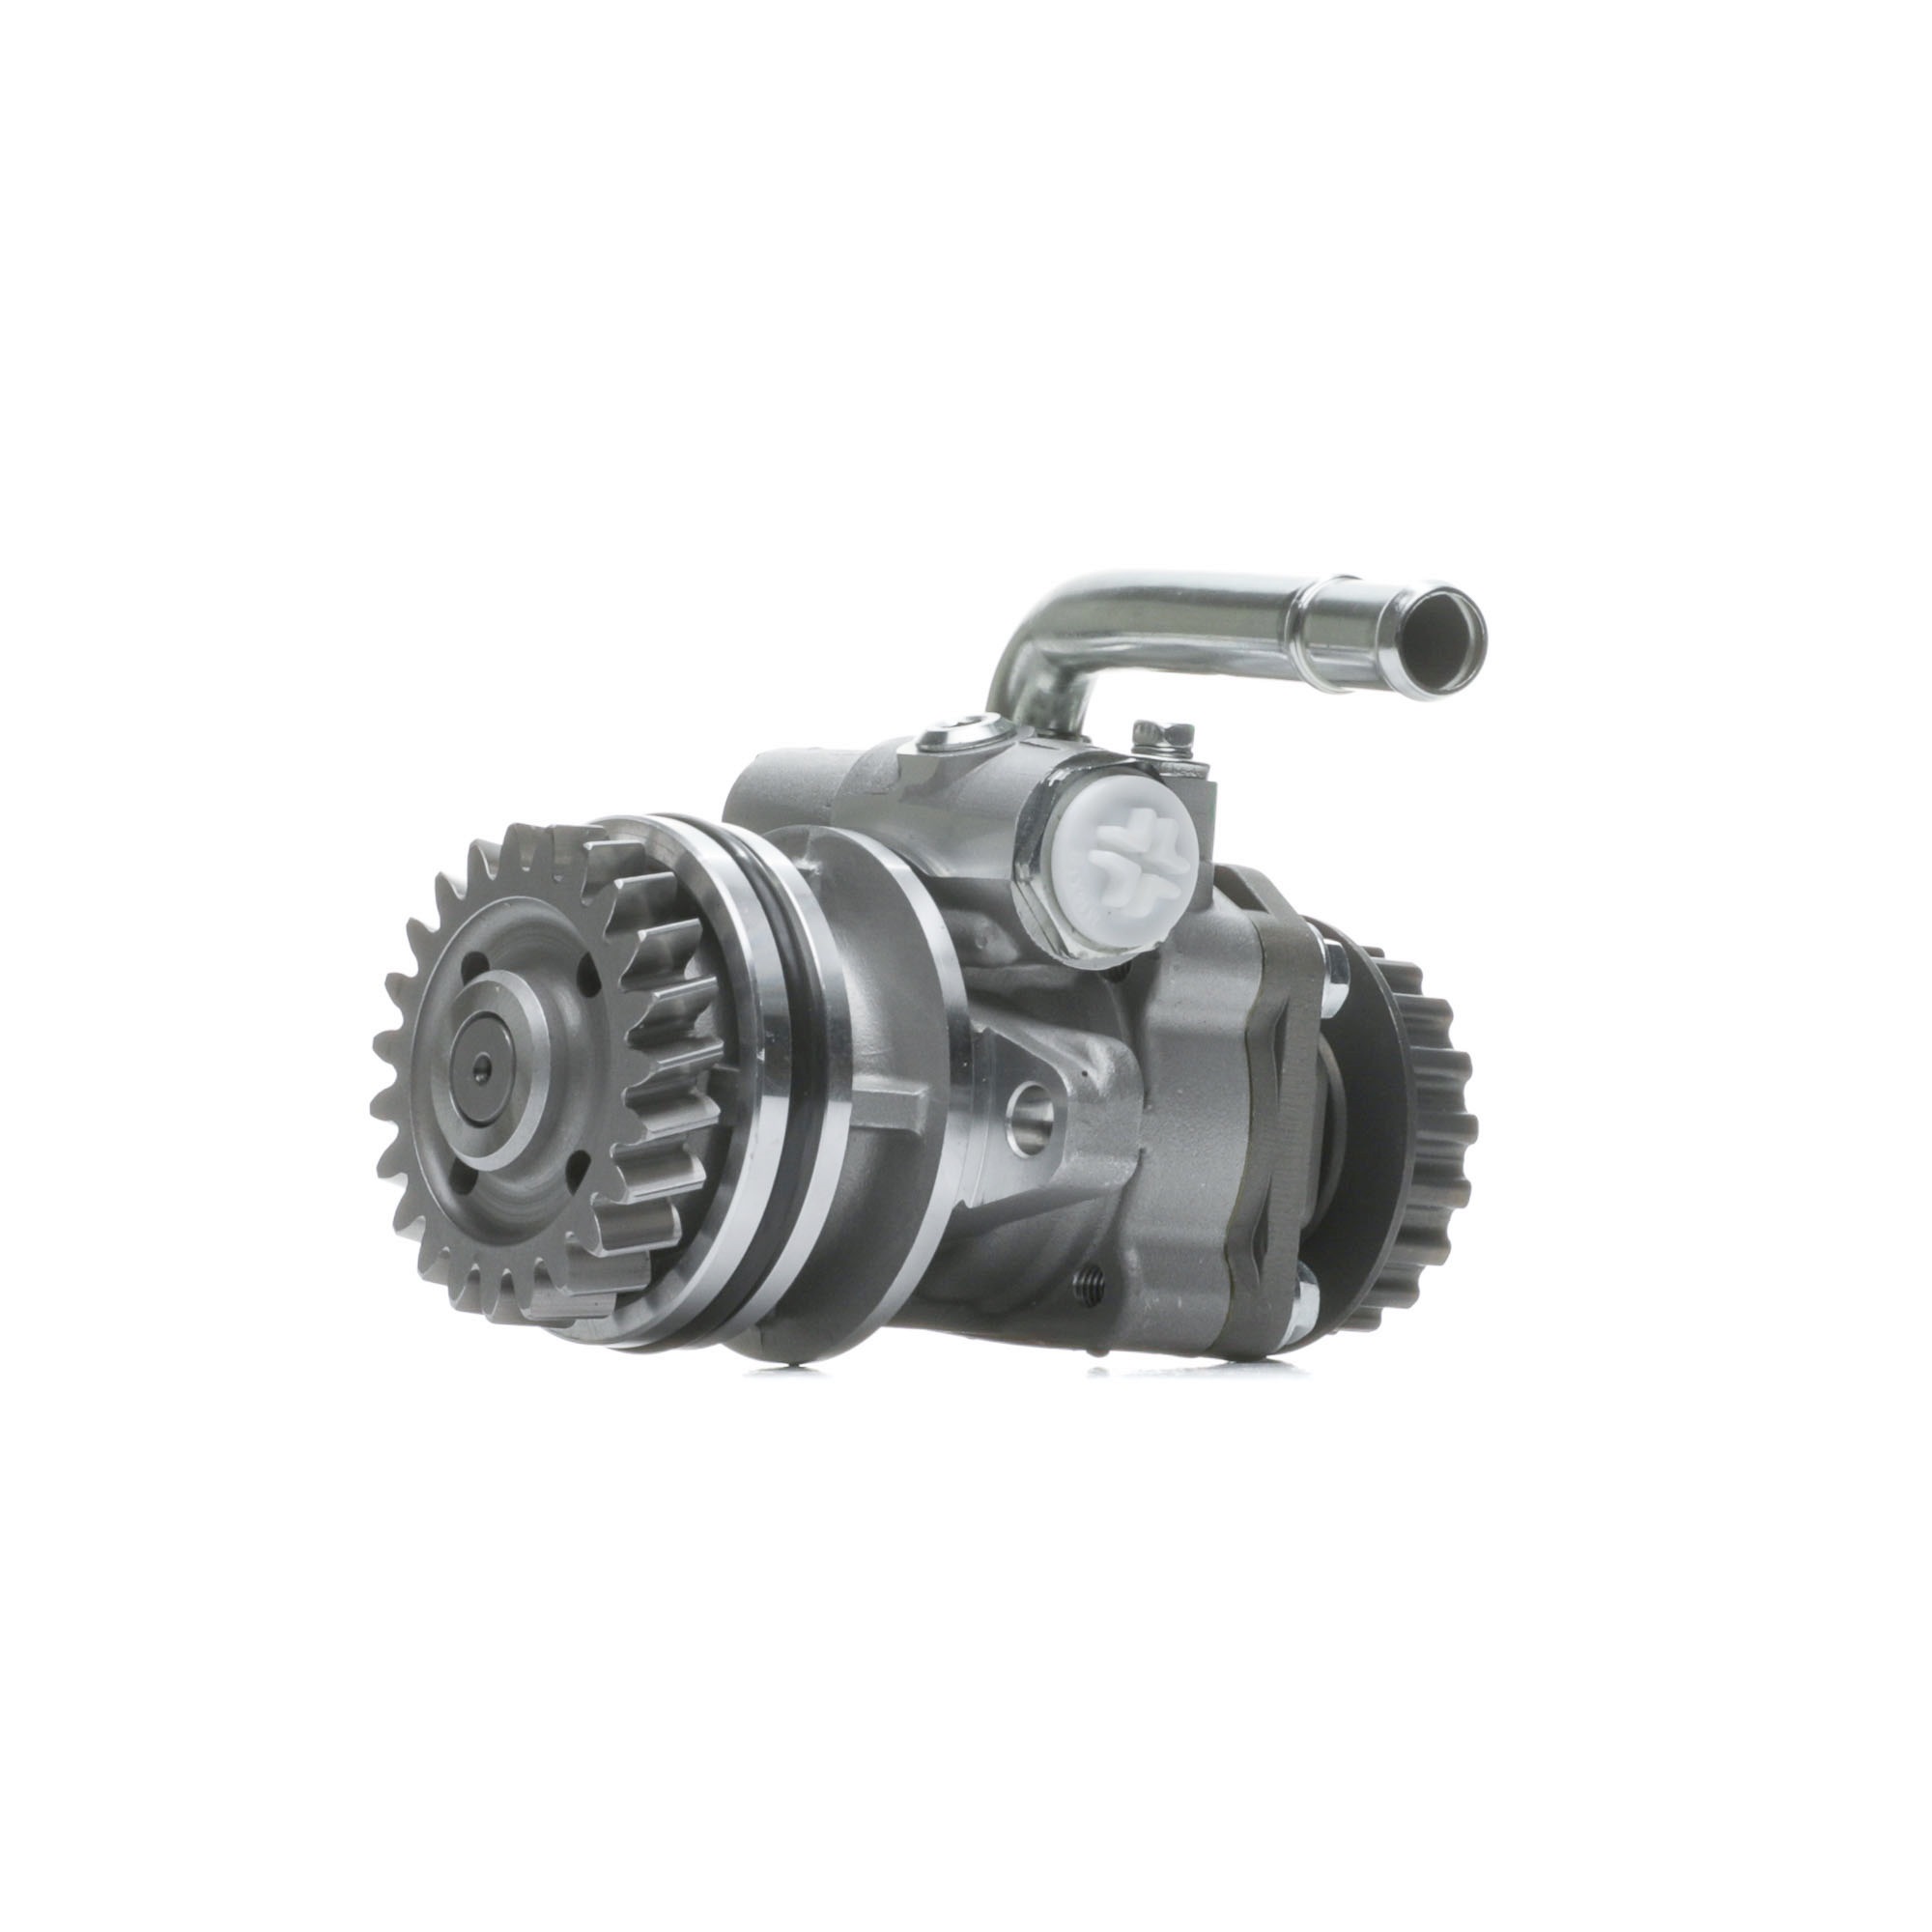 Image of FEBI BILSTEIN Power Steering Pump VW 176464 7H0422153A,7H0422153G,7H0422153H Steering Pump,EHPS,EHPS Pump,Hydraulic Pump, steering system